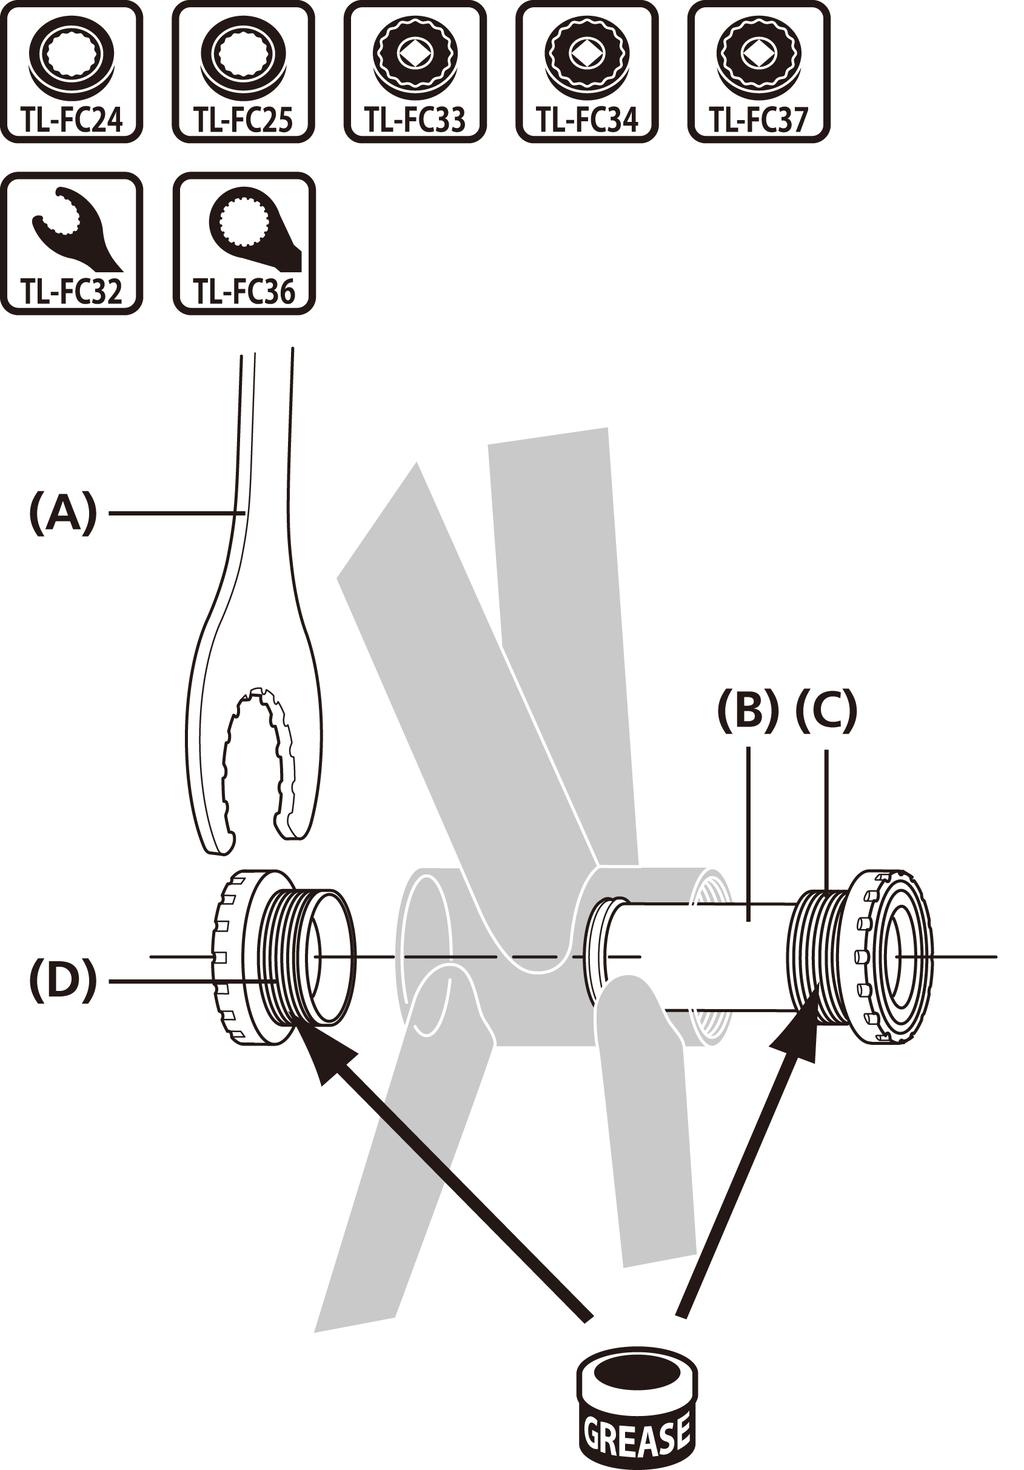 MONTAJ (AYNAKOL) MONTAJ (AYNAKOL) MTB/Trekking için HOLLOWTECH II/2 parça krank Kullanılan ara parçaları, orta göbek gövdesinin genişliğine göre değişir.